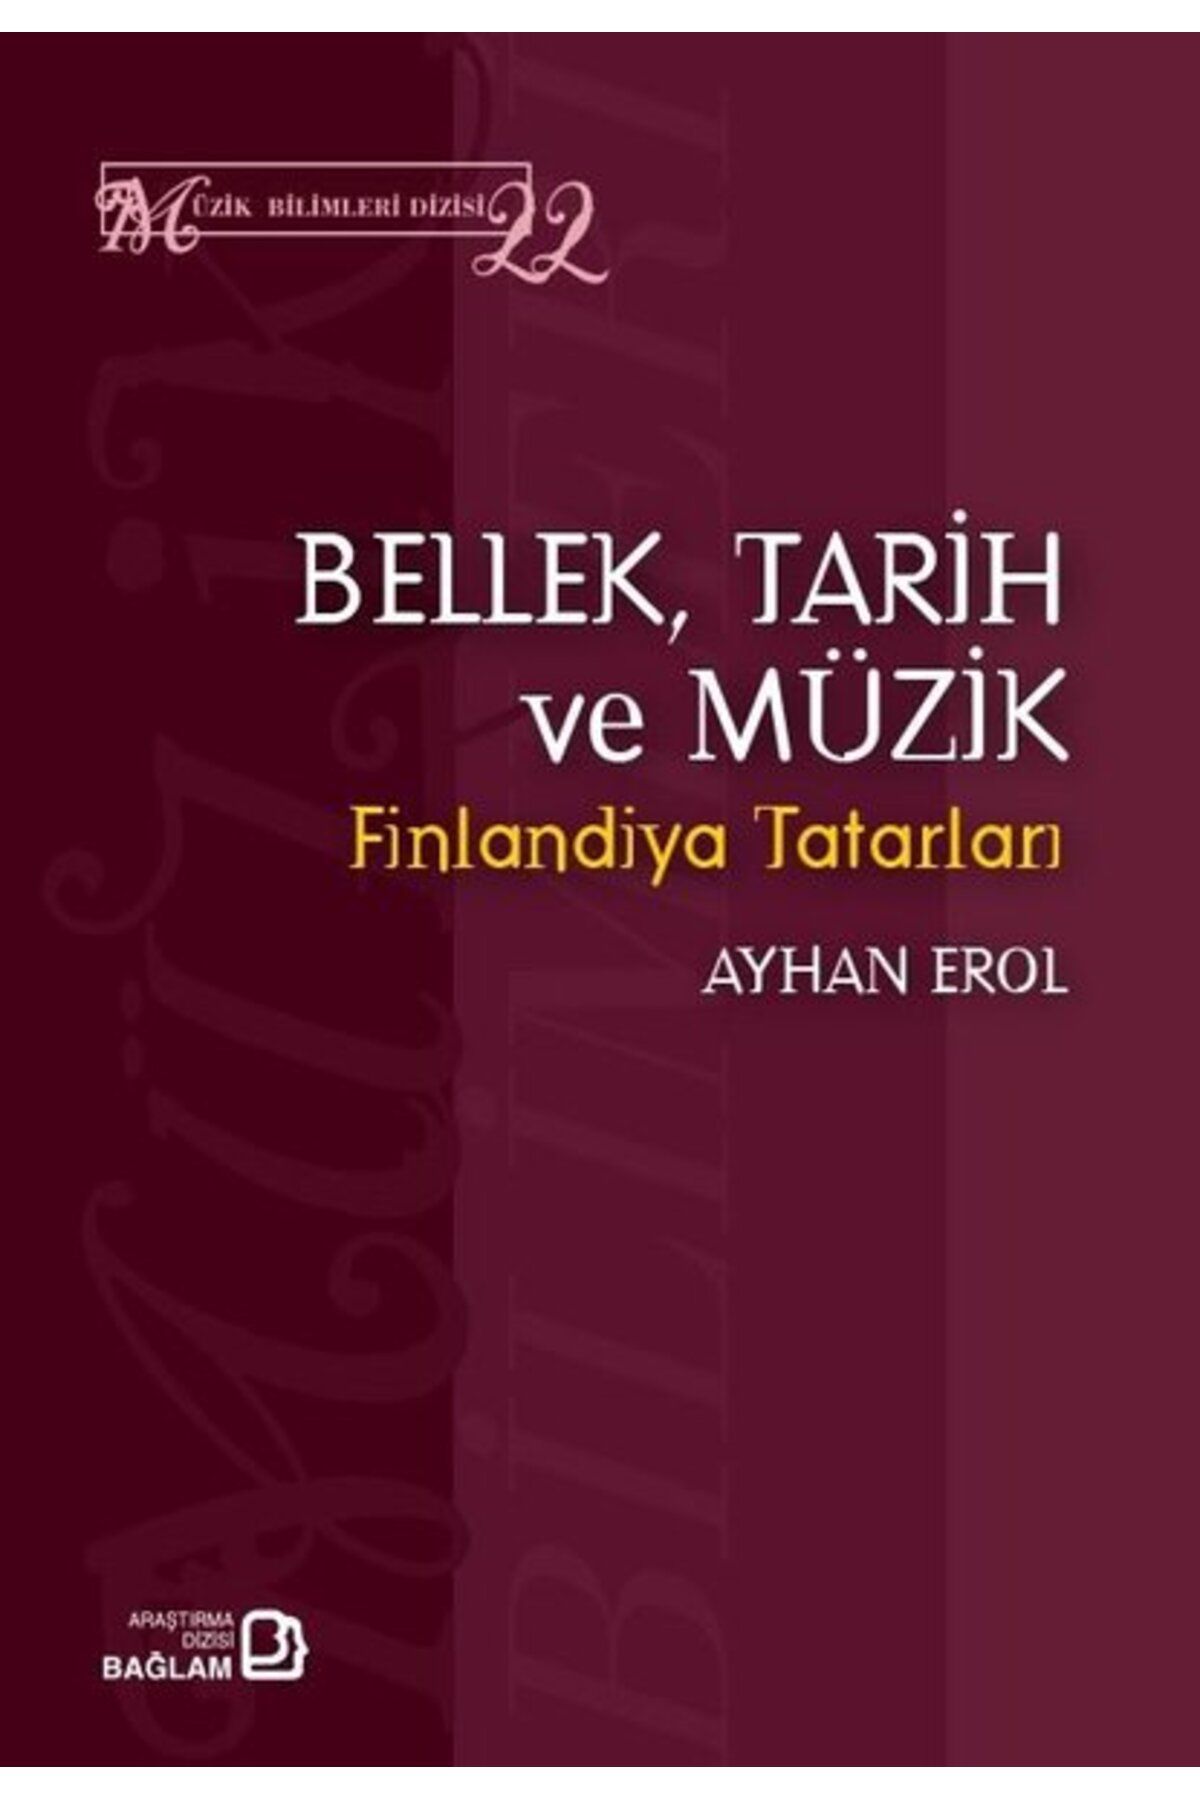 Bağlam Yayıncılık Bellek,Tarih ve Müzik - Finlandiya Tatarları - Müzik Bilimleri Dizisi 22